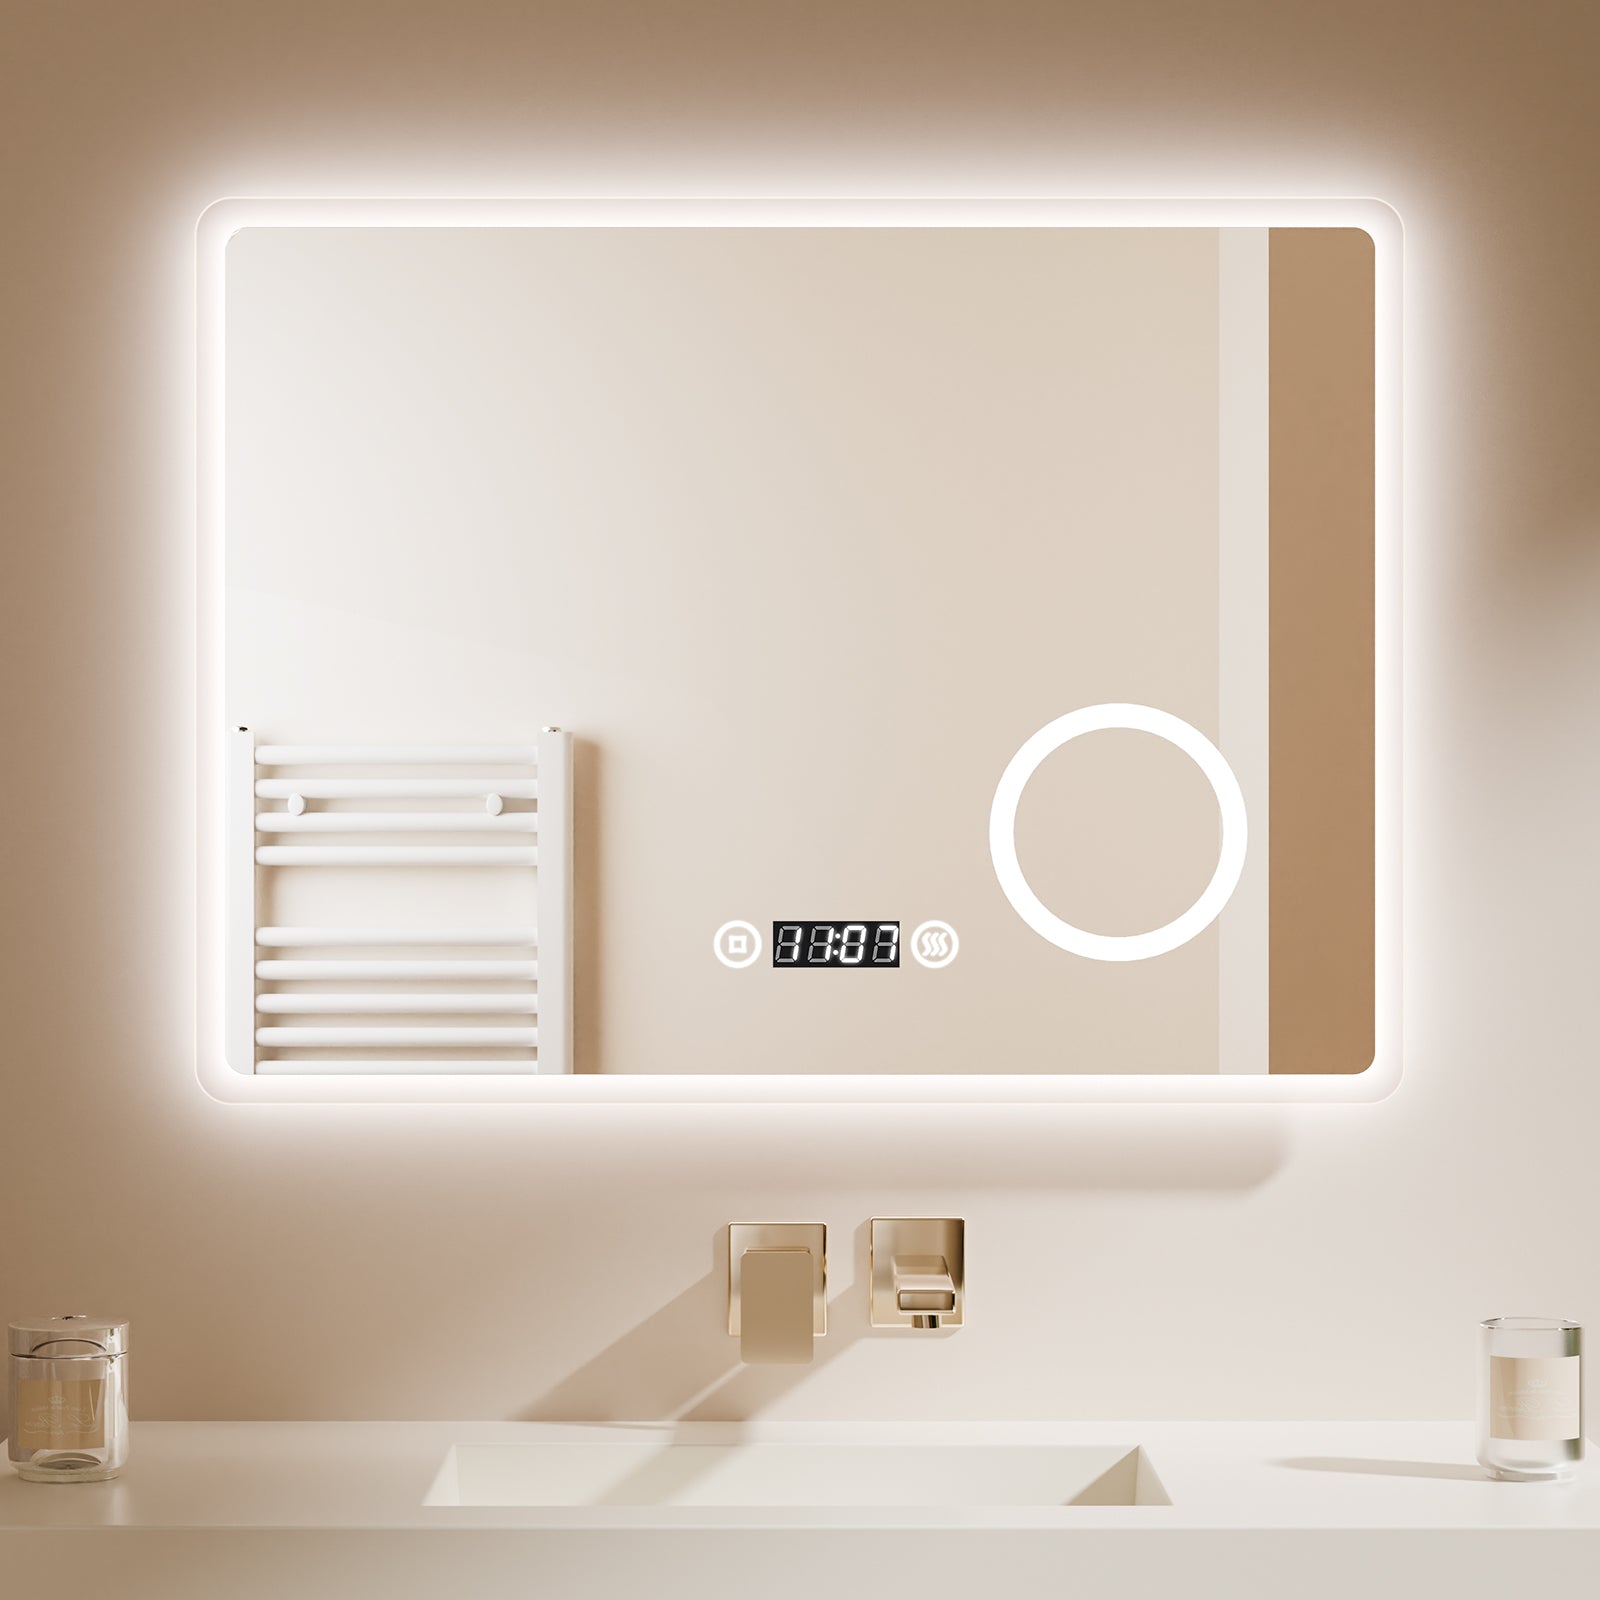 EMKE Badspiegel „LeeMi πX Plus“ 60*80cm mit Beleuchtung 3000K/4000K/6500K Touch+Dimmbar+Beschlagfrei+3x Kosmetikspiegel+Digitaluhr